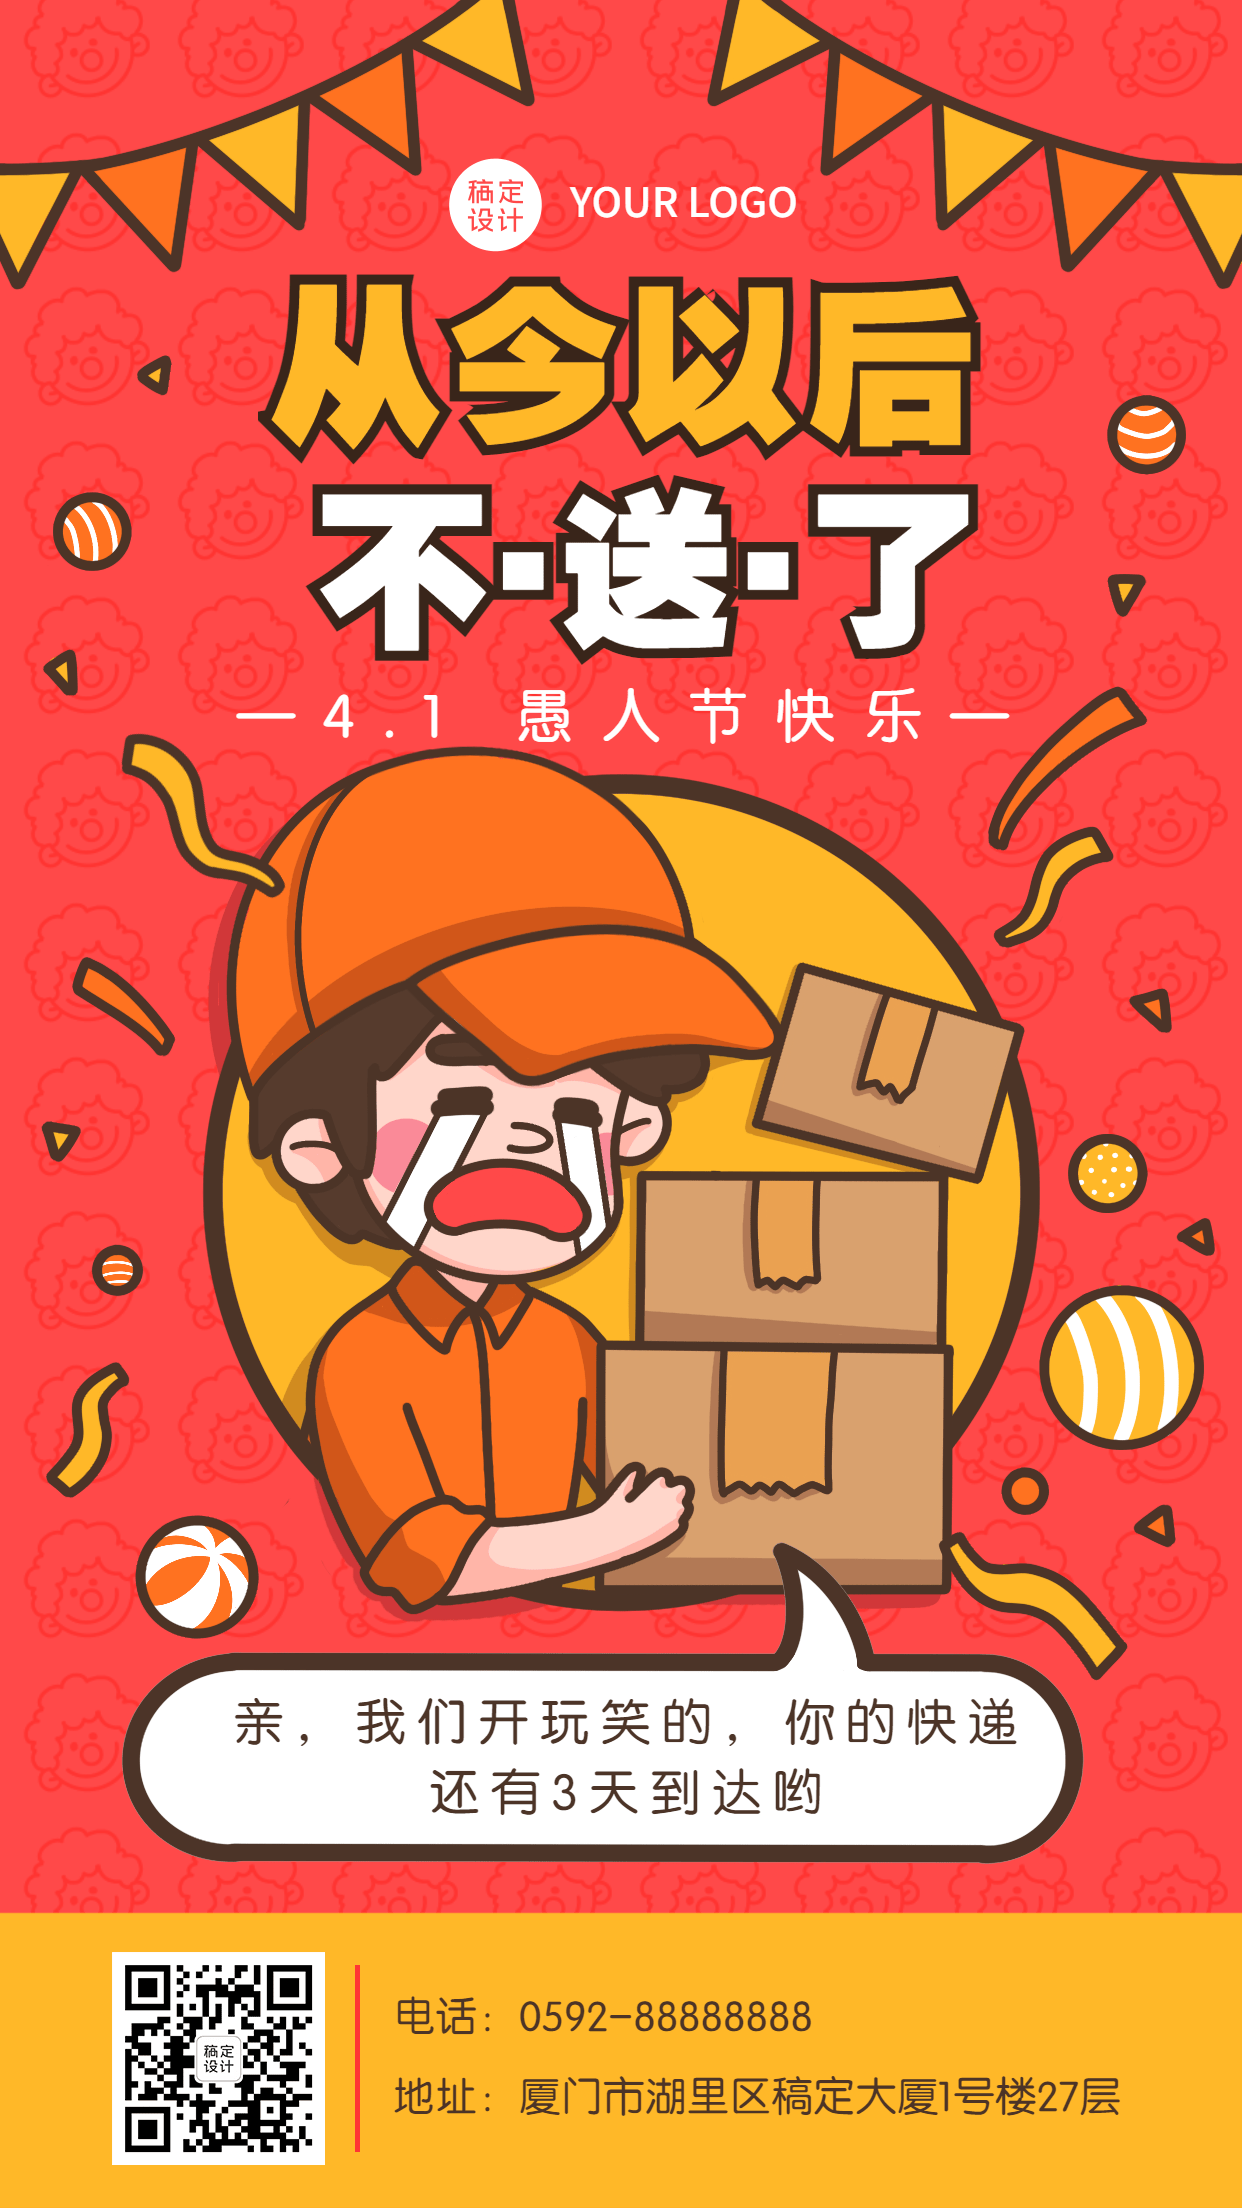 愚人节节日祝福插画系列手机海报